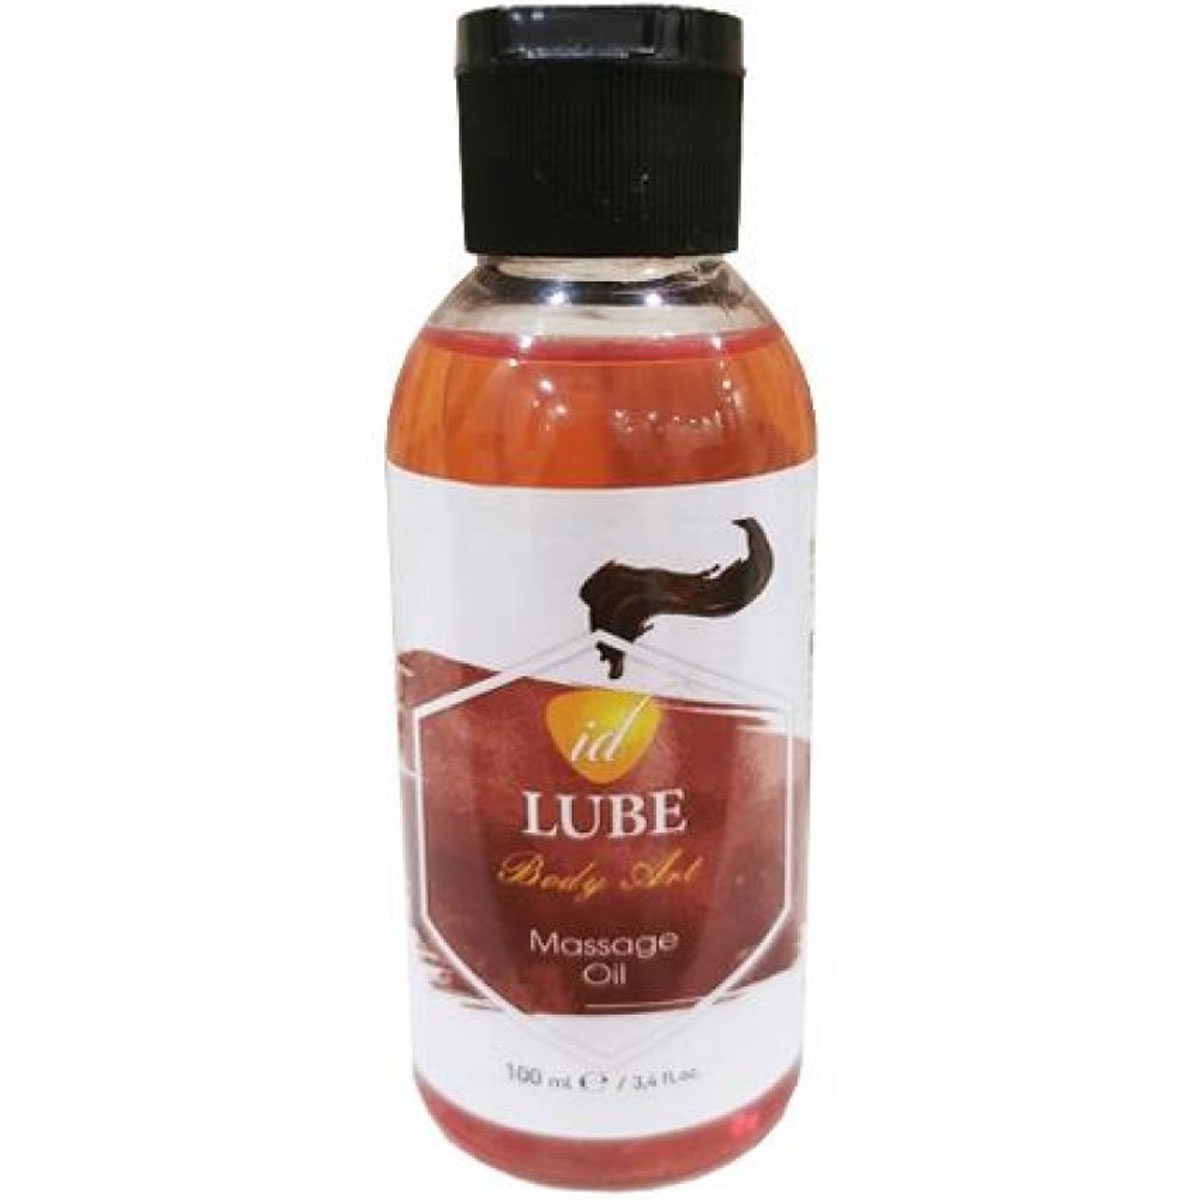 ID Lube Body Art Massage Oil ikolatali Erotik Masaj Yagi 100 ml C-5088